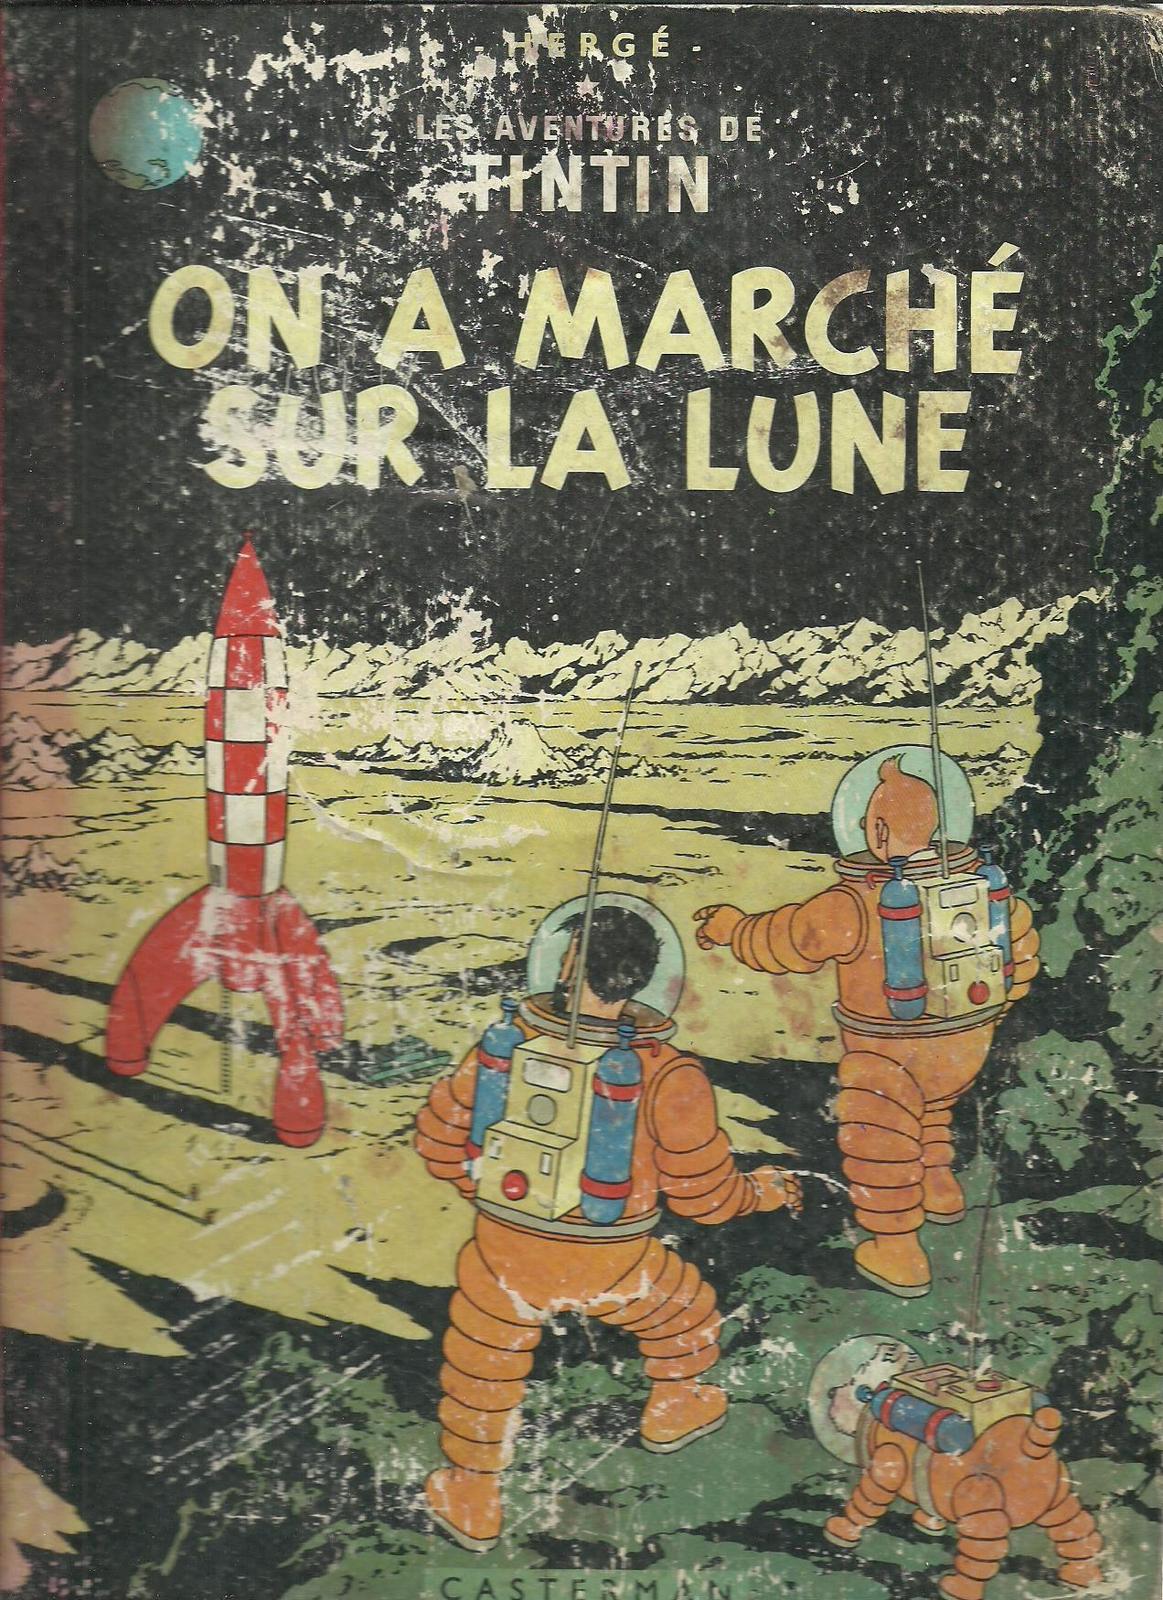 Hergé: On a marché sur la Lune (French language, 1954, Casterman)